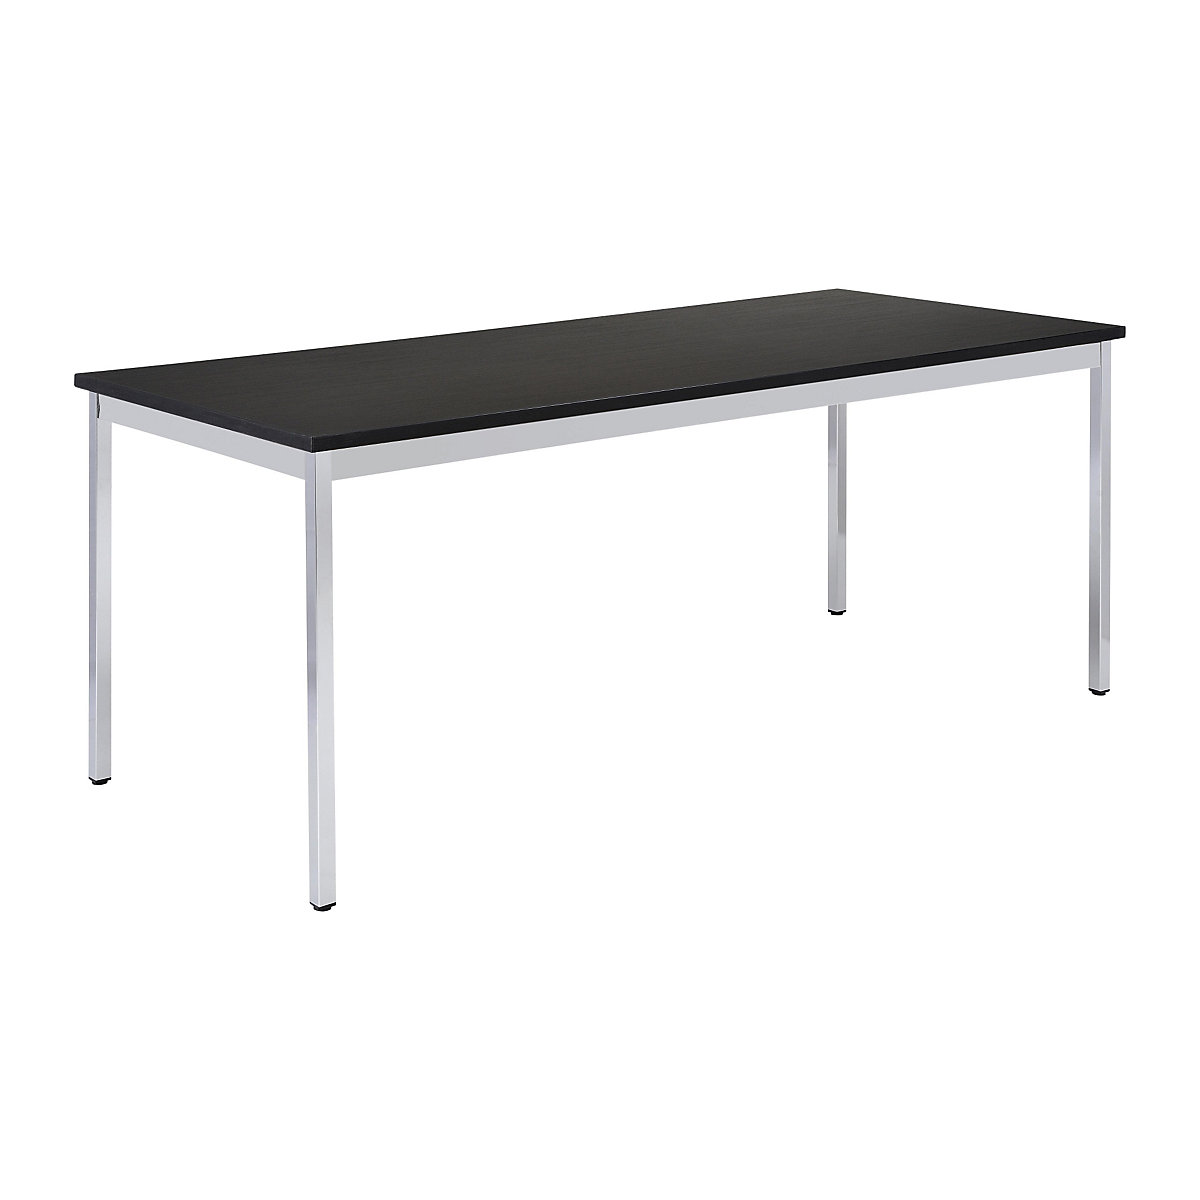 Table polyvalente – eurokraft basic, rectangulaire, l x h 1200 x 740 mm, profondeur 800 mm, plateau noir, piétement chromé-13